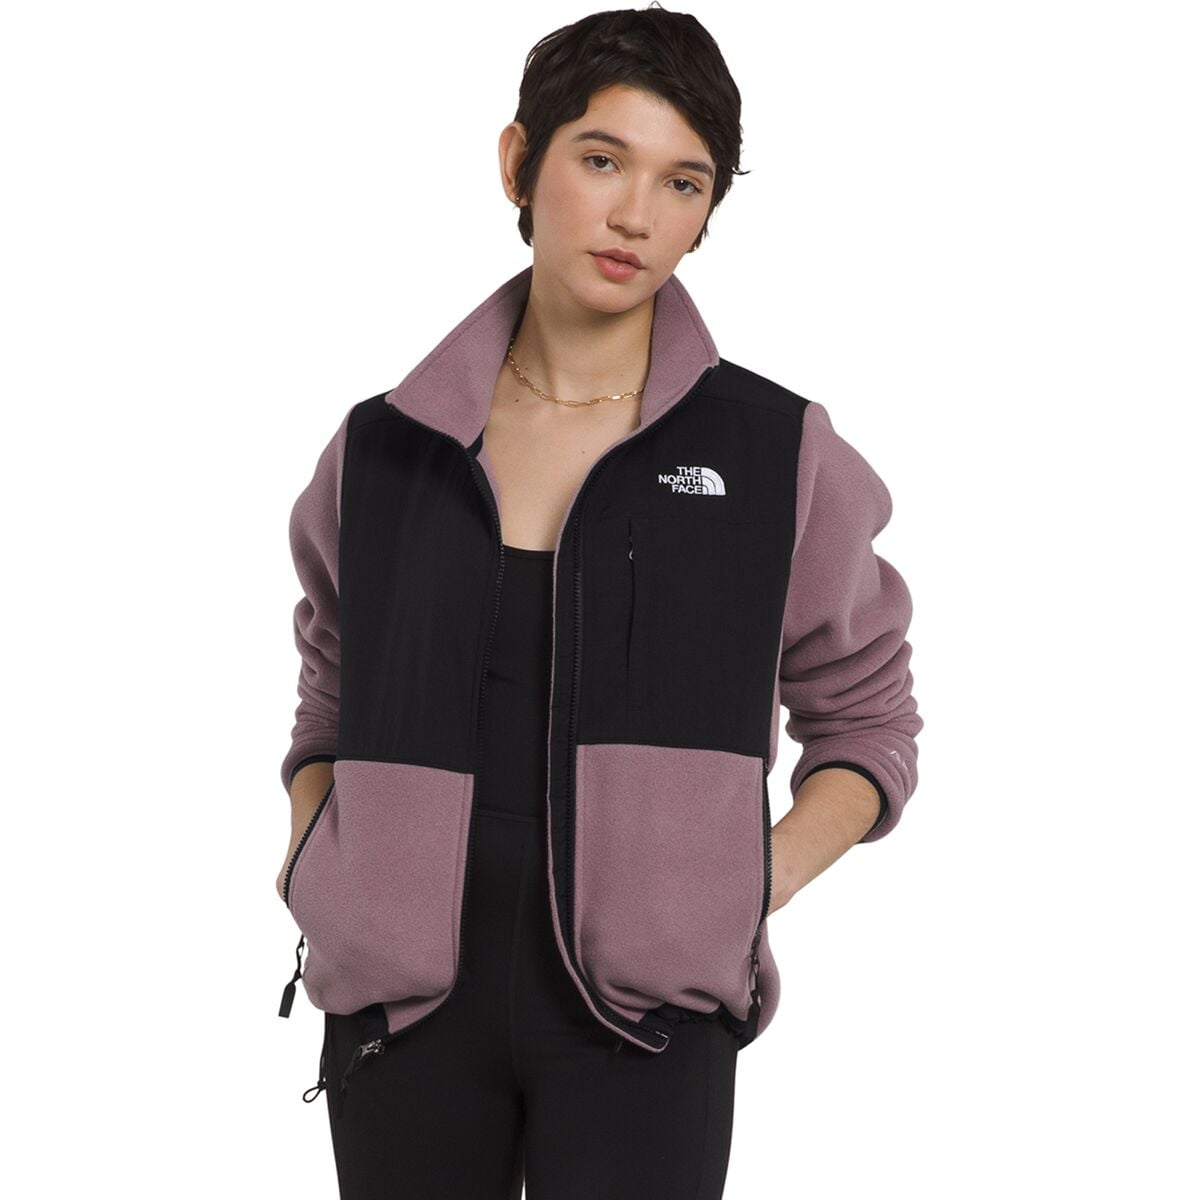 Denali 2 Fleece Jacket - Women